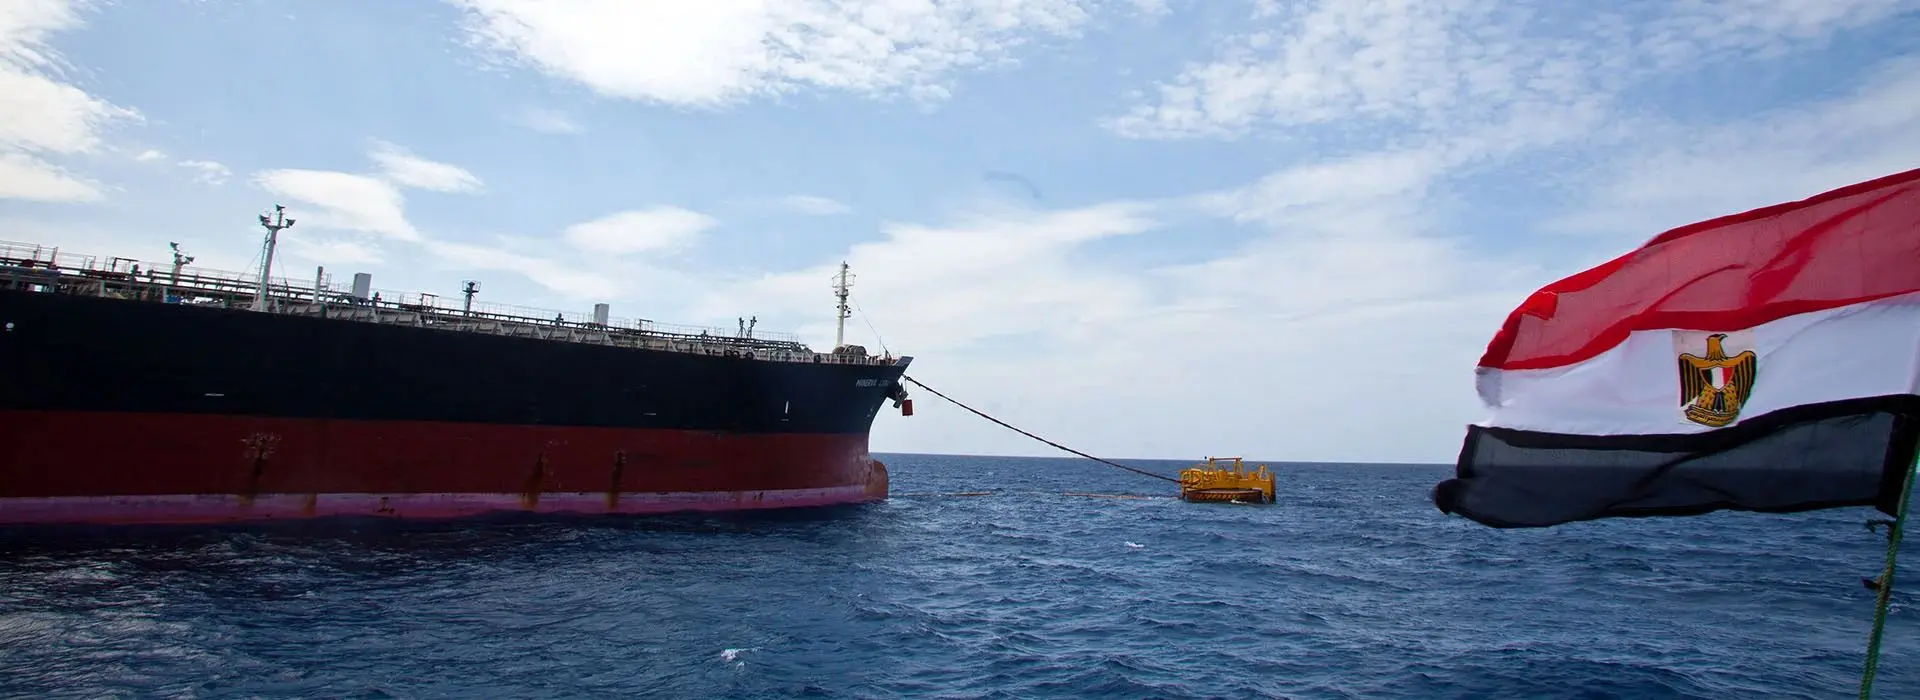 مصر مسیر جدید نفت روسیه به بازارهای جهانی است؟